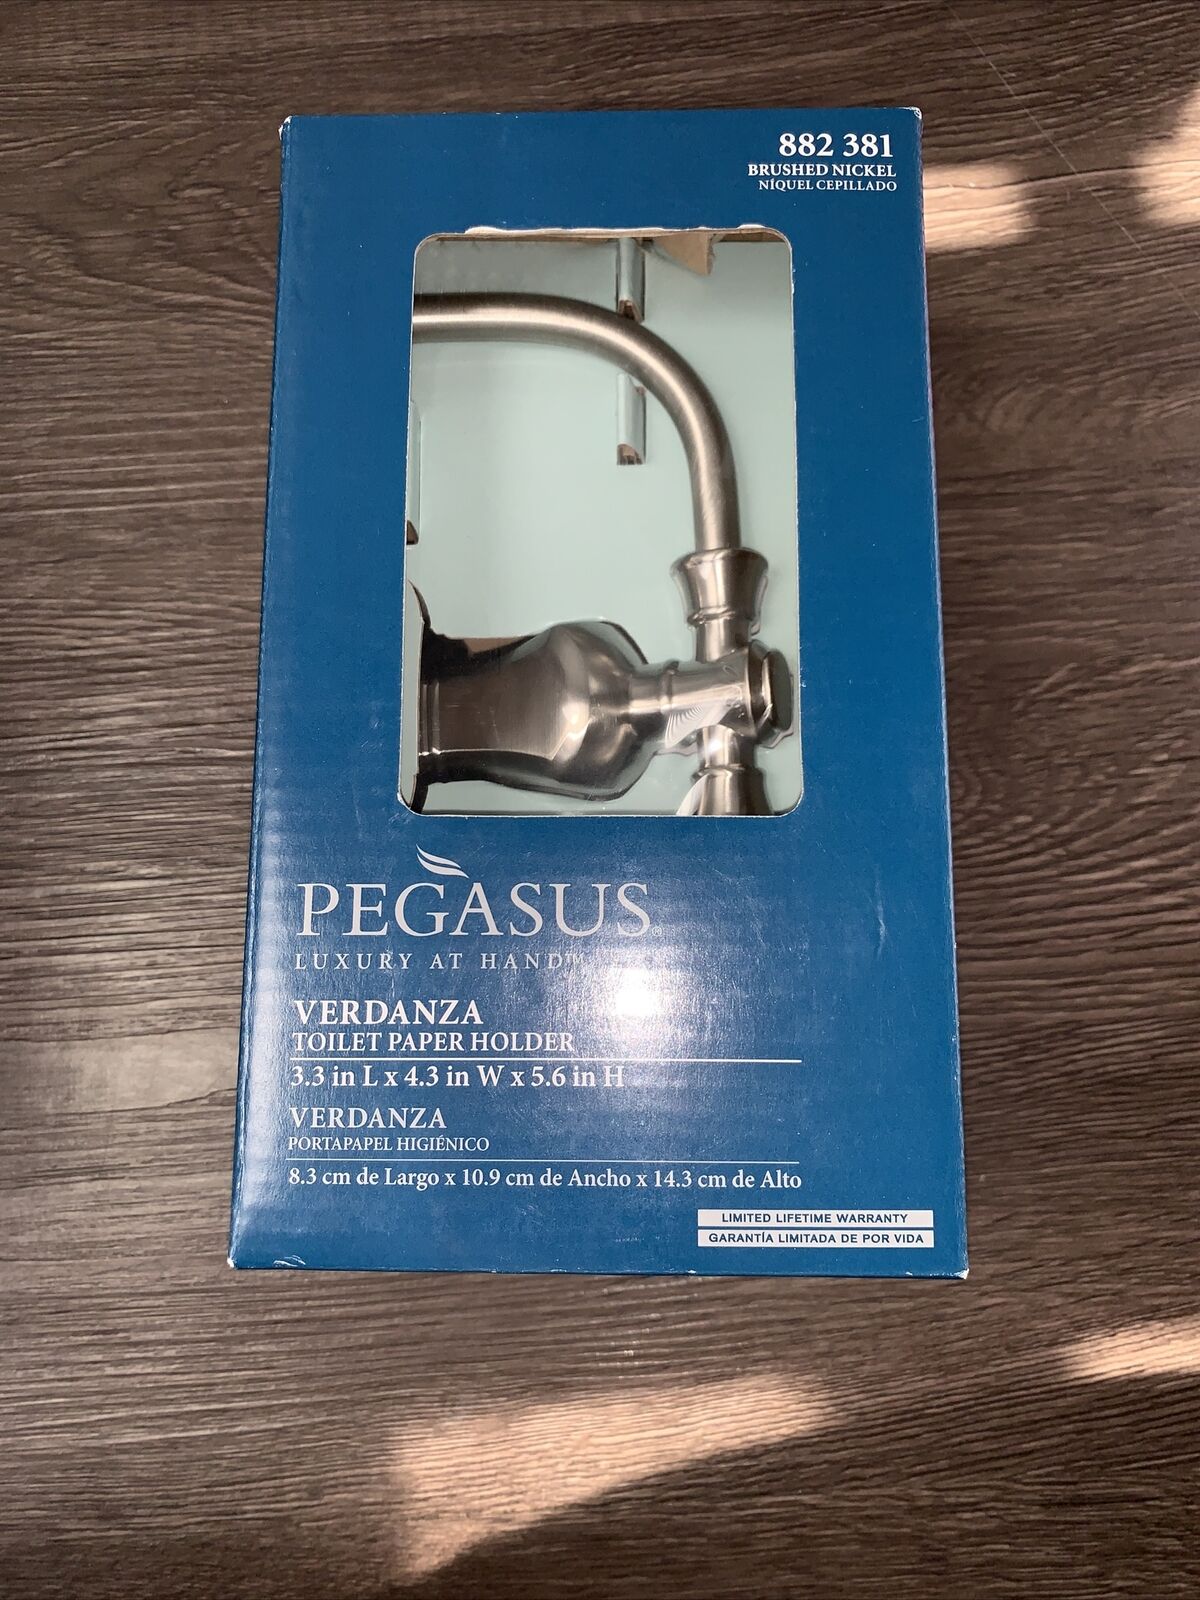 Pegasus Verdanza Toilet Paper Holder Brushed Nickel 882 381